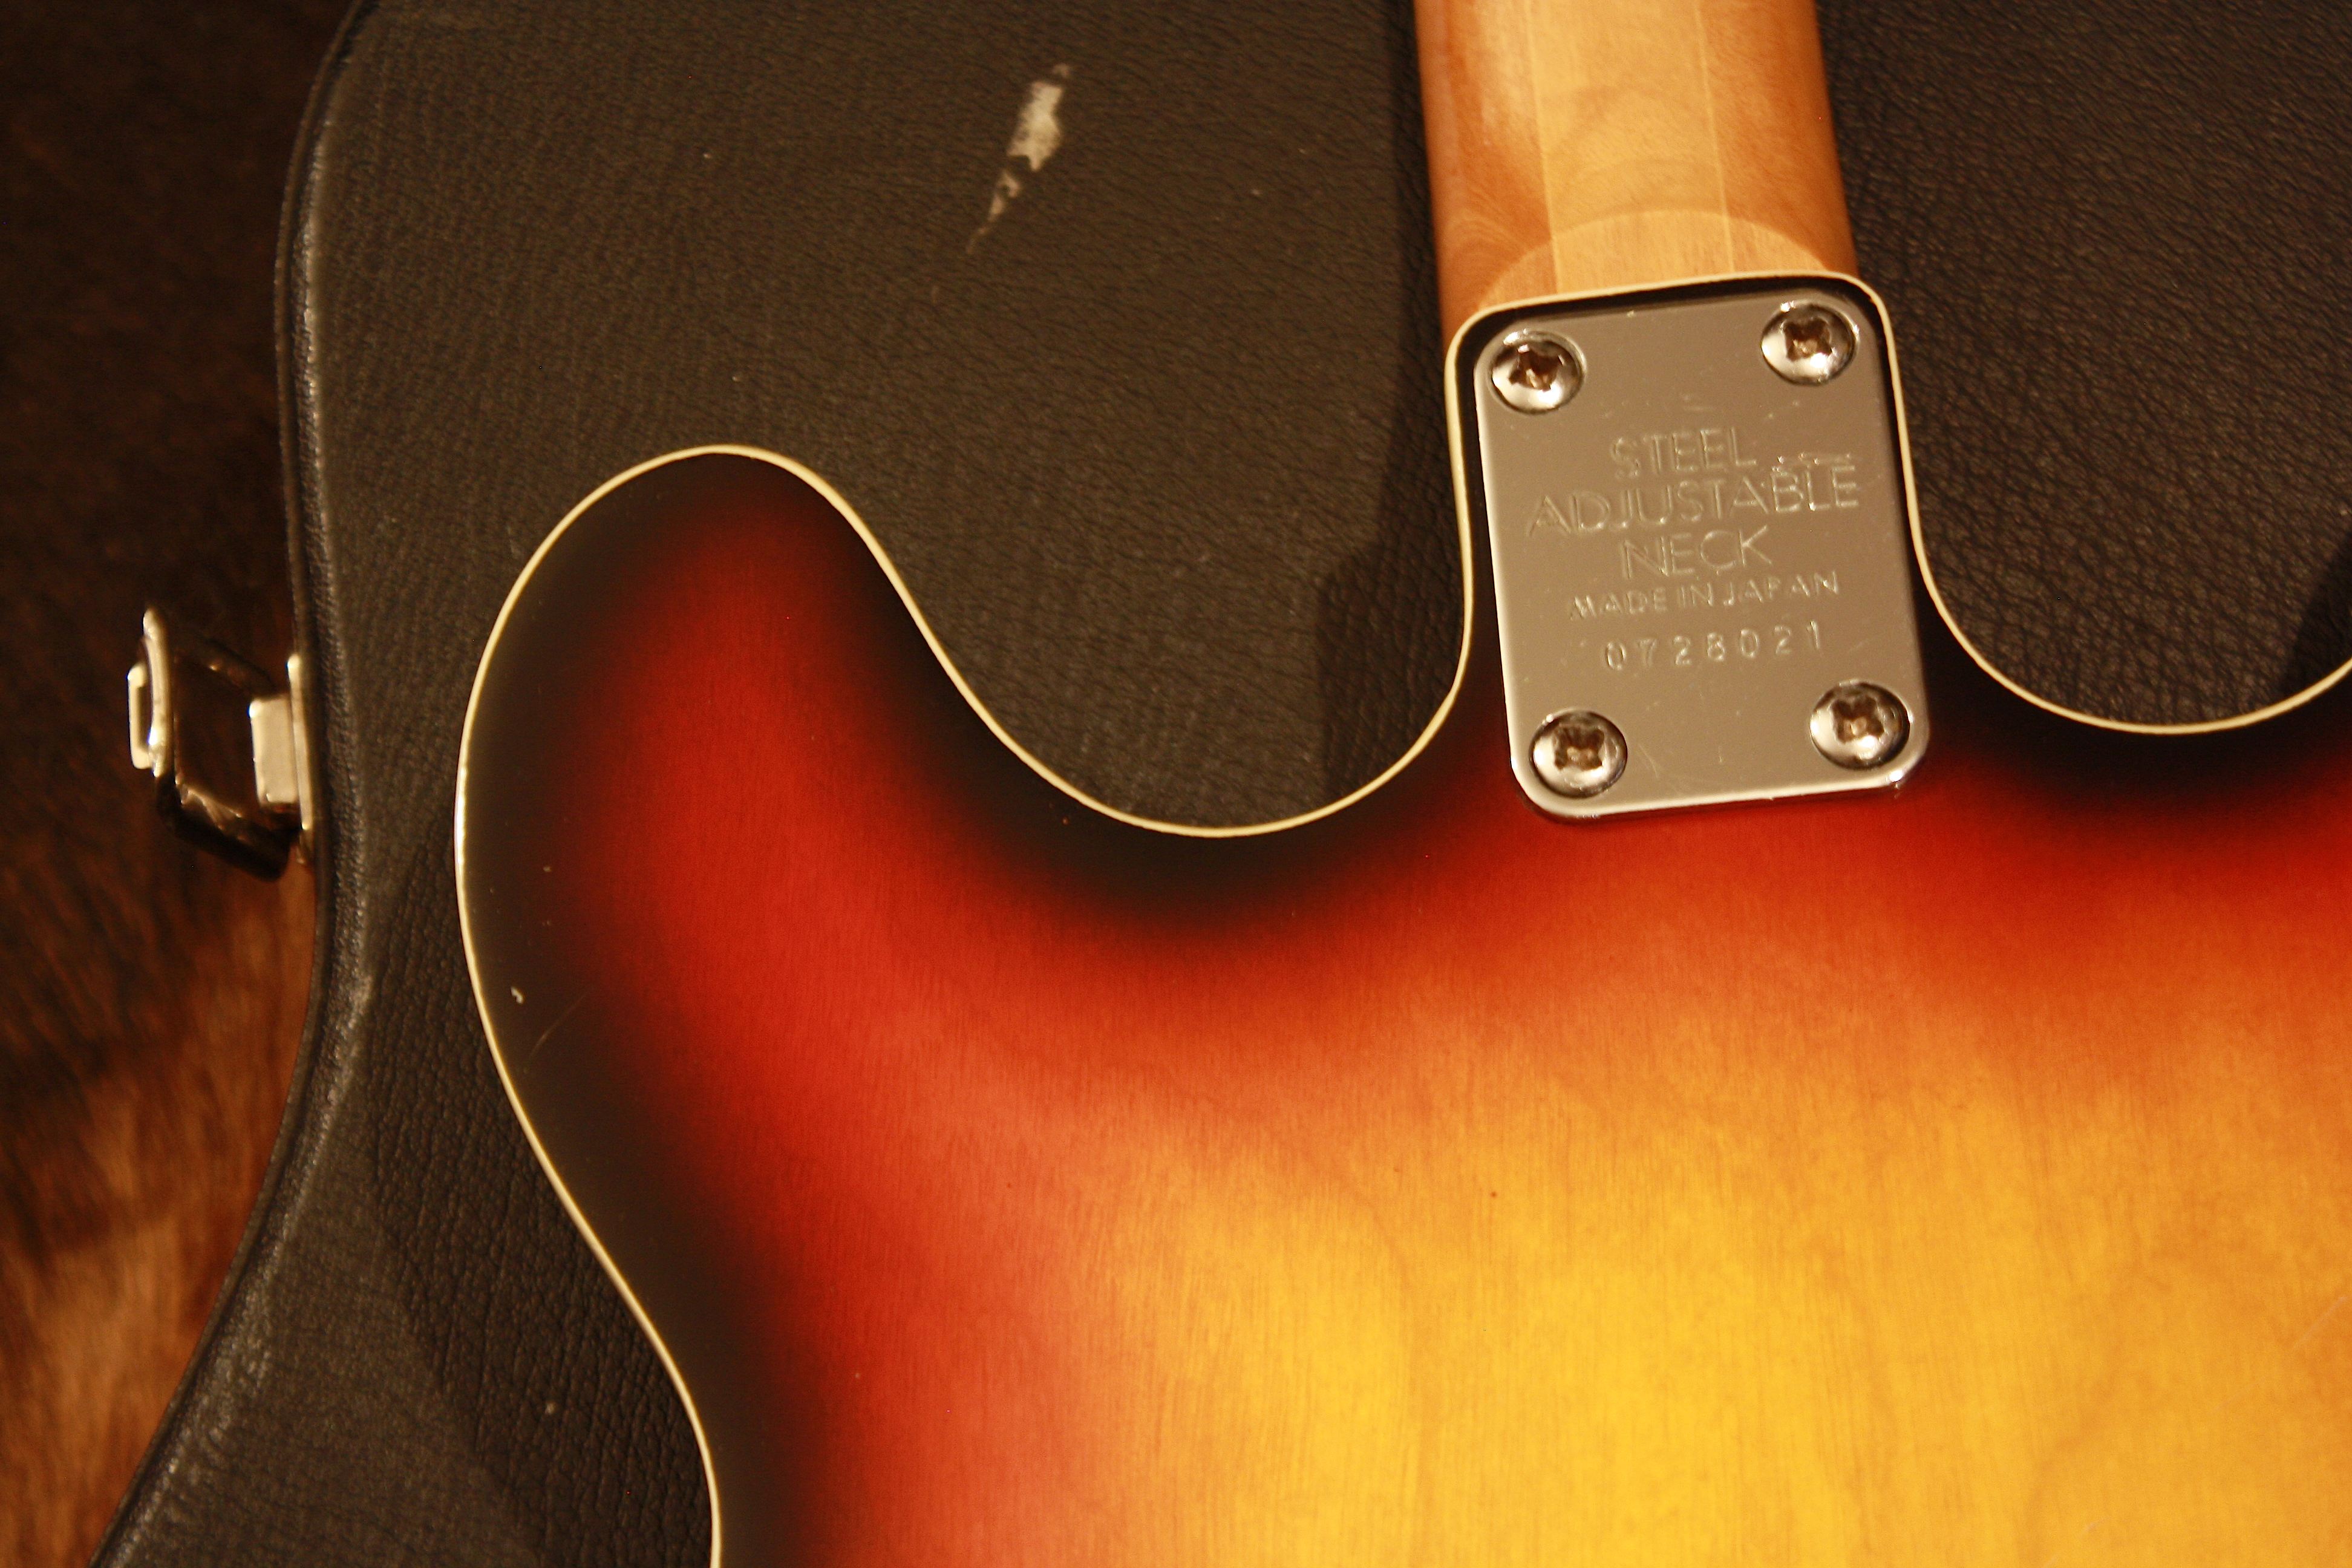 aria guitar serial number